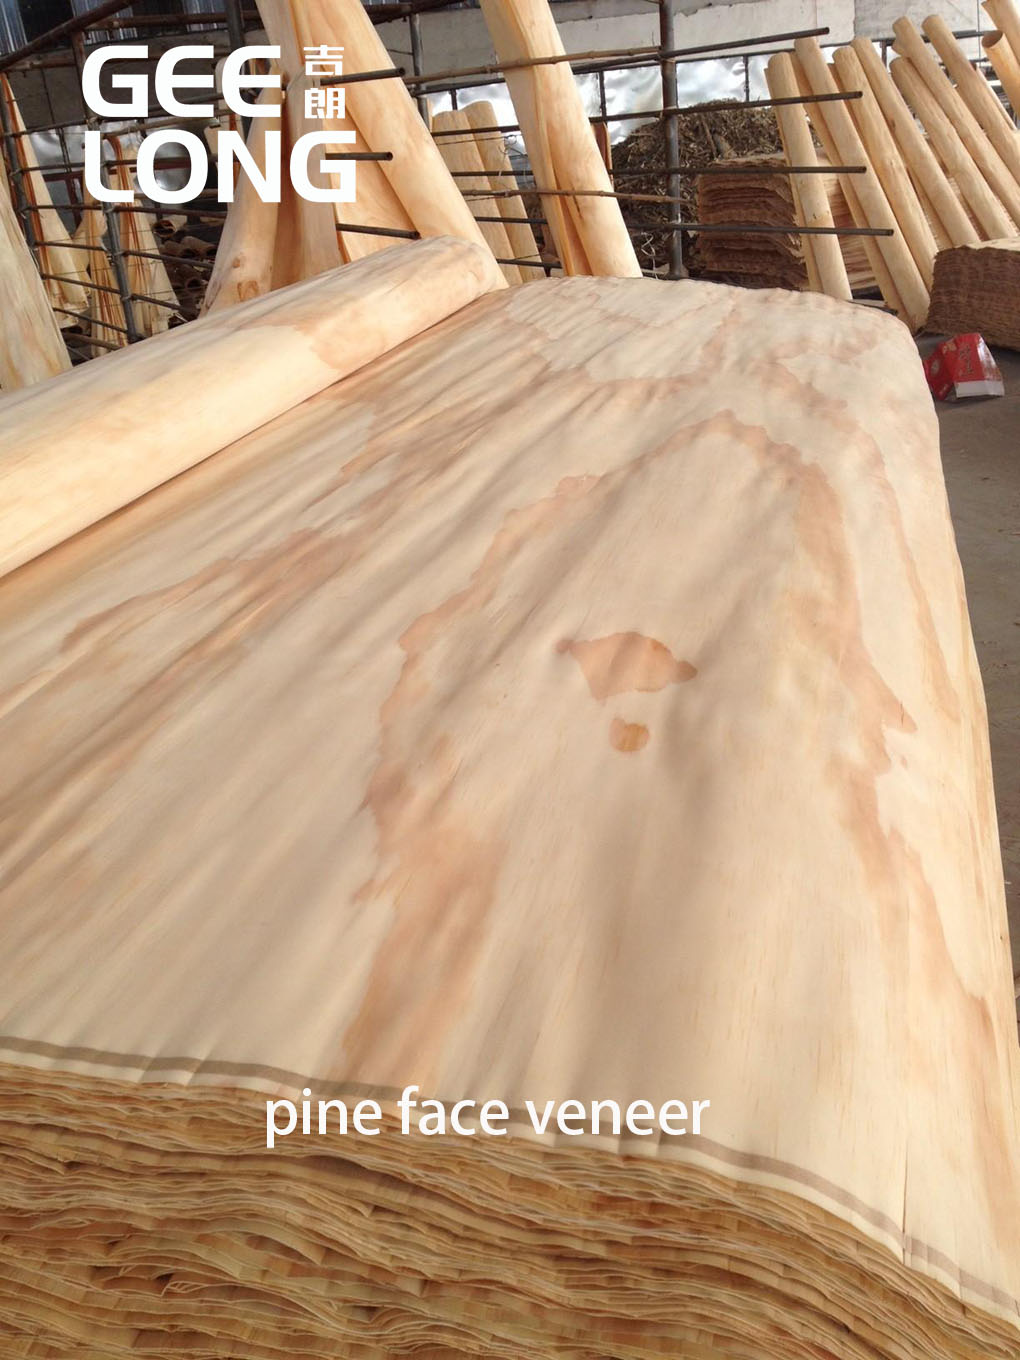 pine veneers